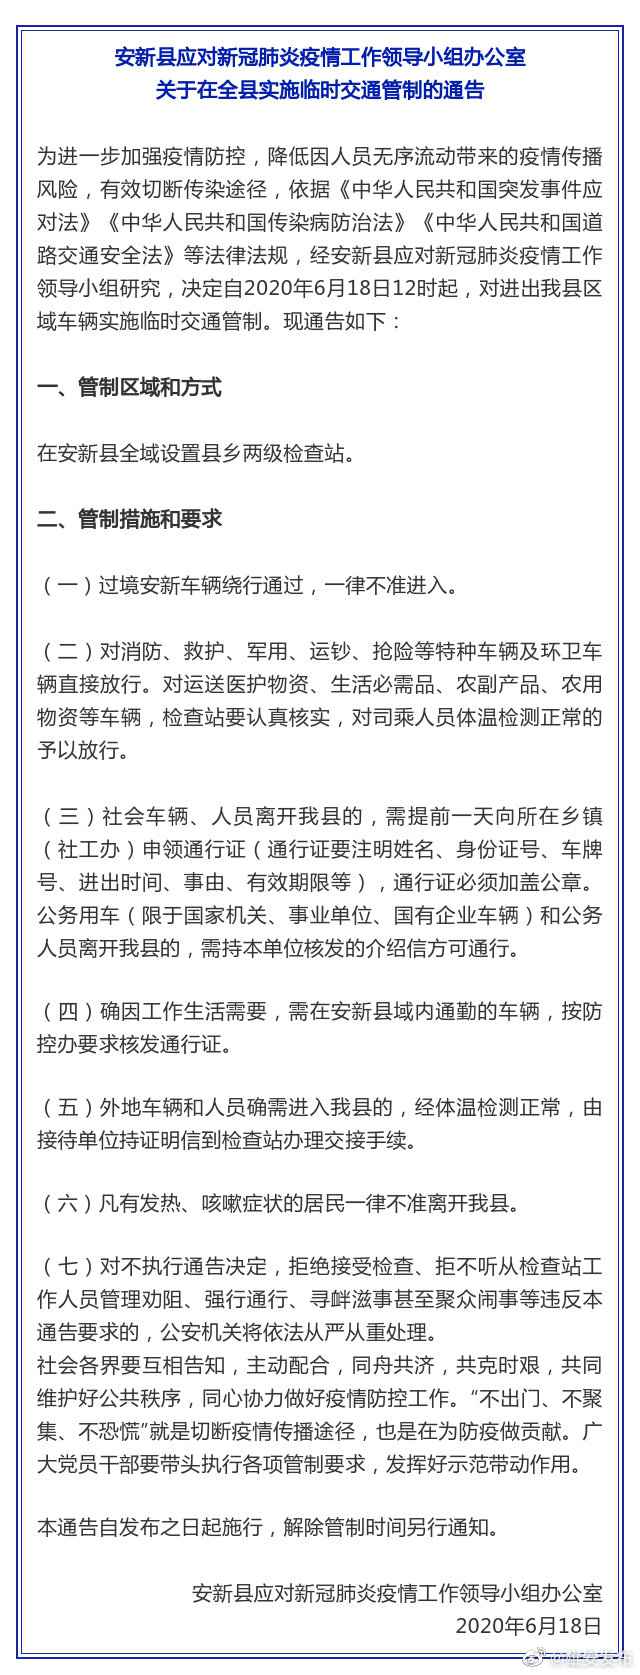 图片来源：河北雄安新区管理委员会官方微博